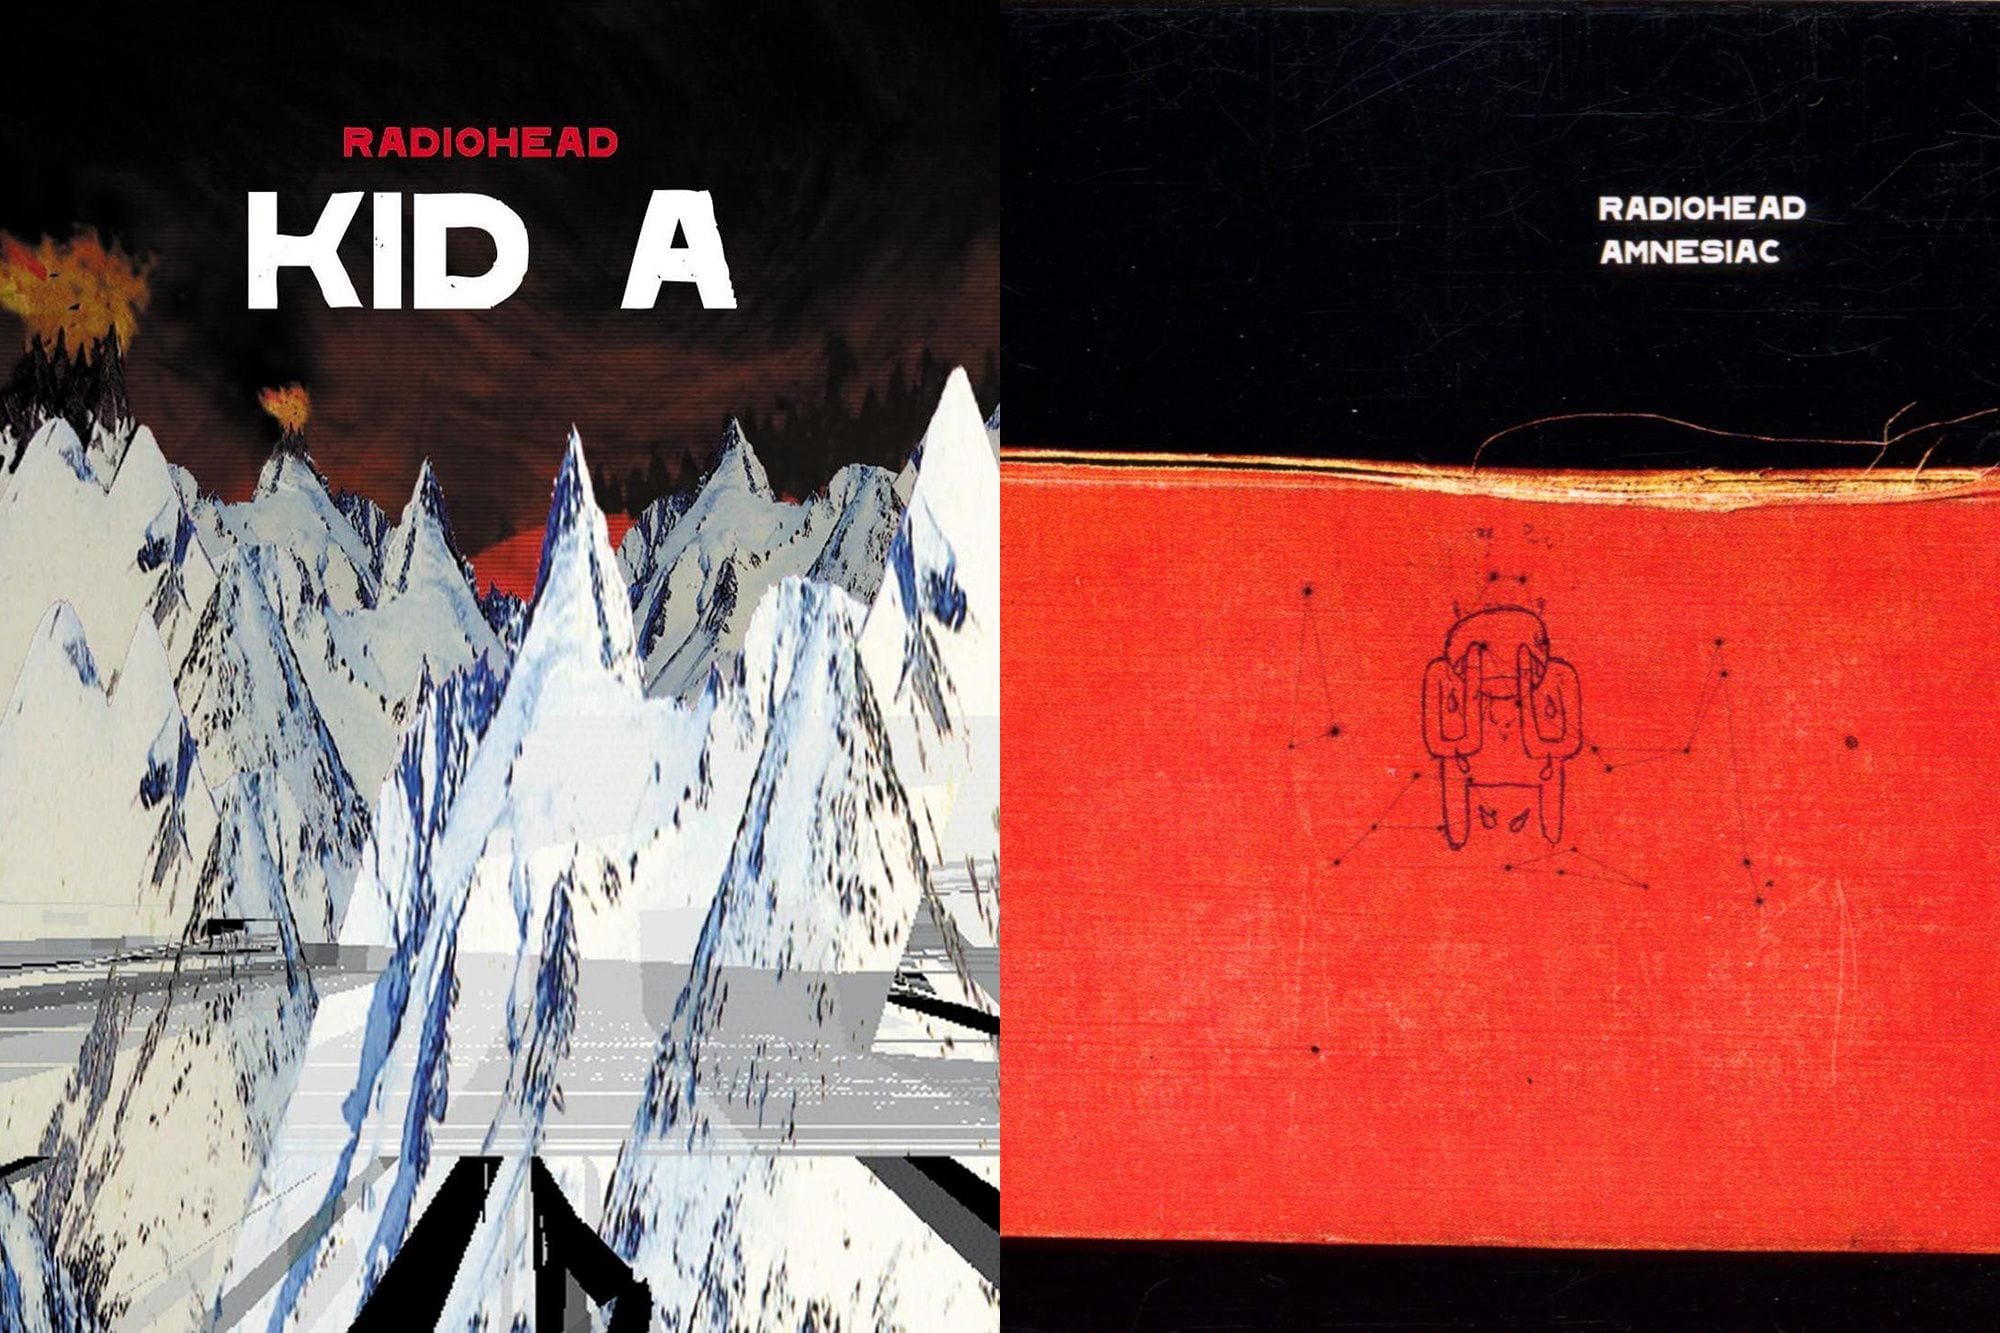 radiohead-kid-a-amnesiac